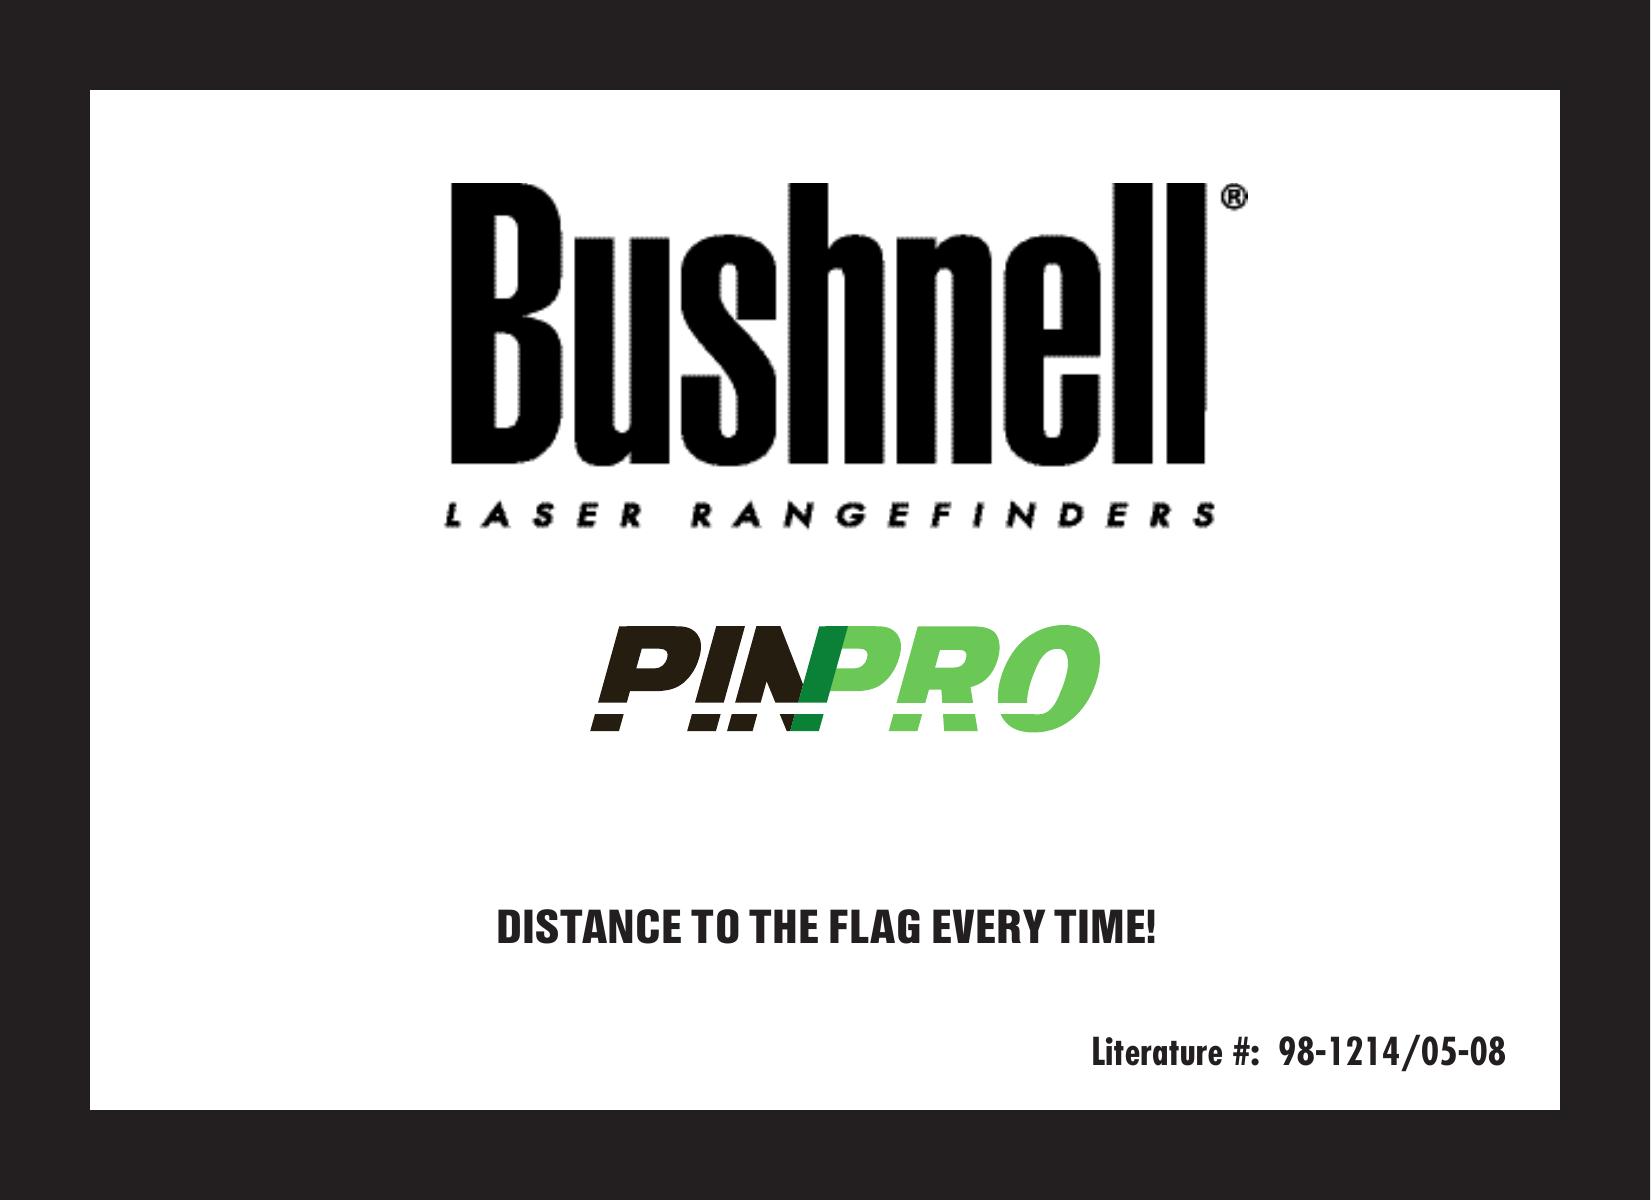 Bushnell 98-1214/05-08 Film Camera User Manual